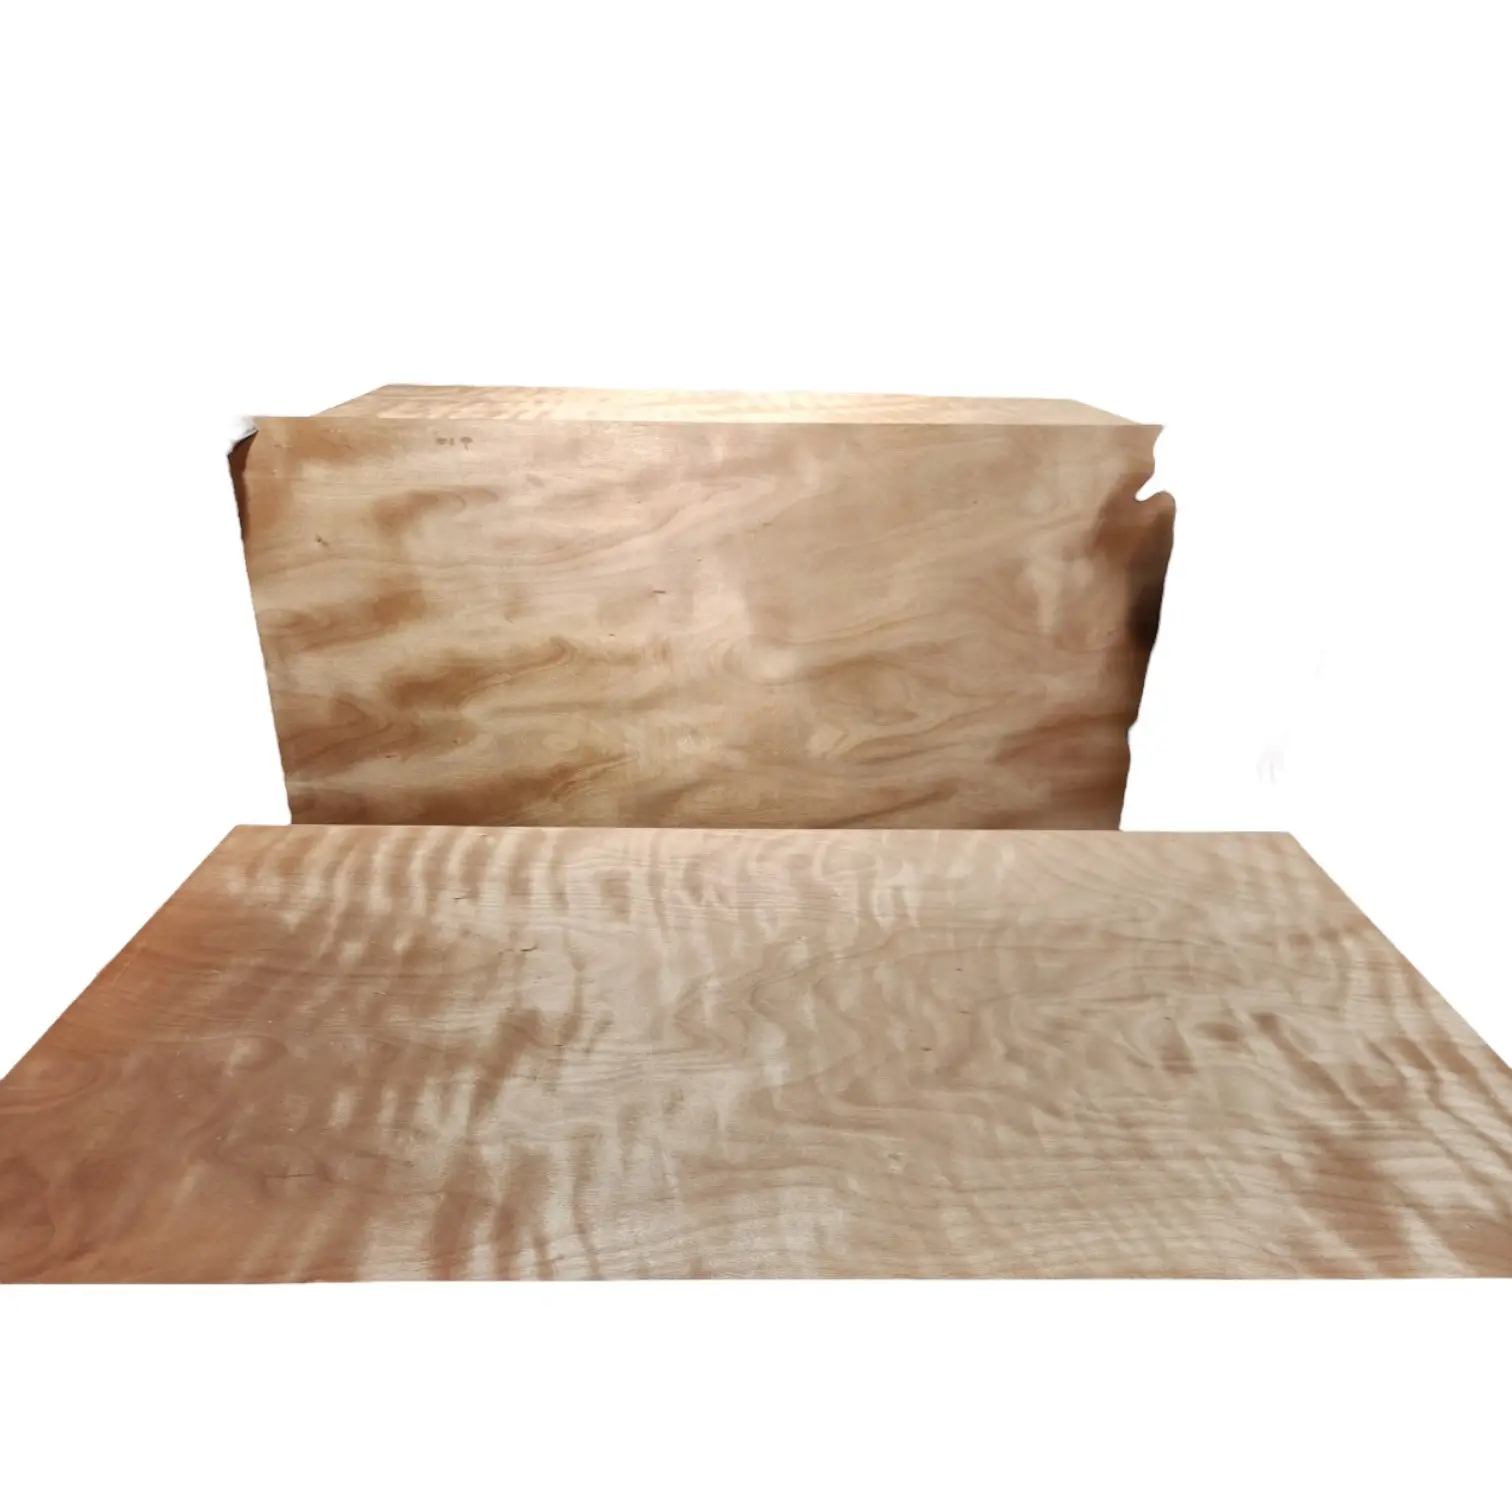 Formwork Plywood spesifikasi tinggi tahan lama menggunakan untuk banyak tujuan kemasan disesuaikan dibuat di Vietnam produsen